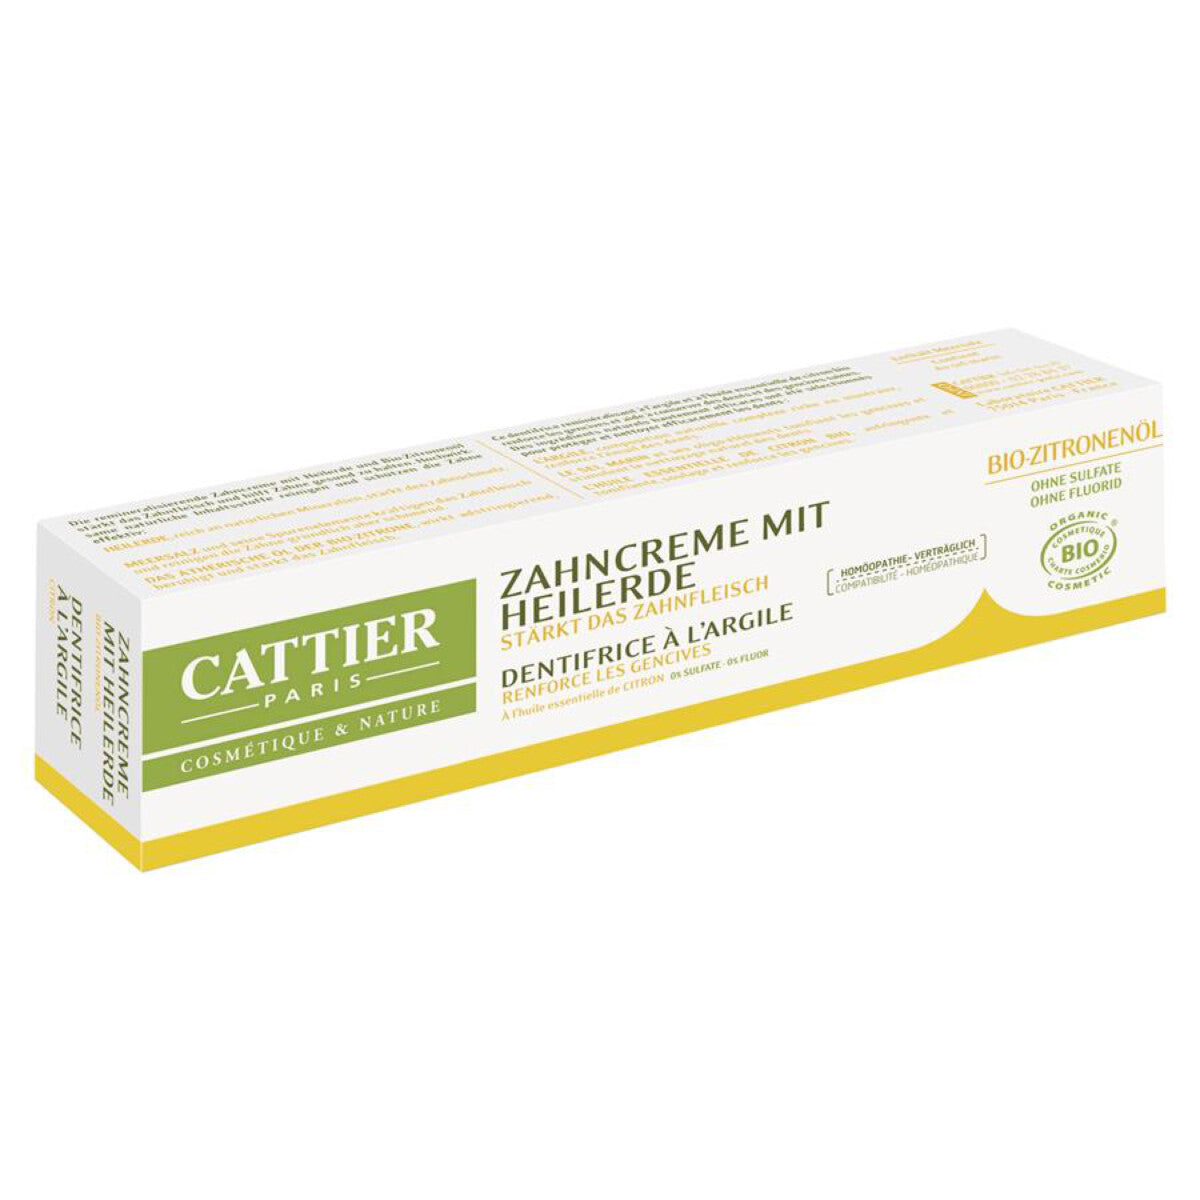 CATTIER Zahncreme Heilerde Zitrone - 75 ml